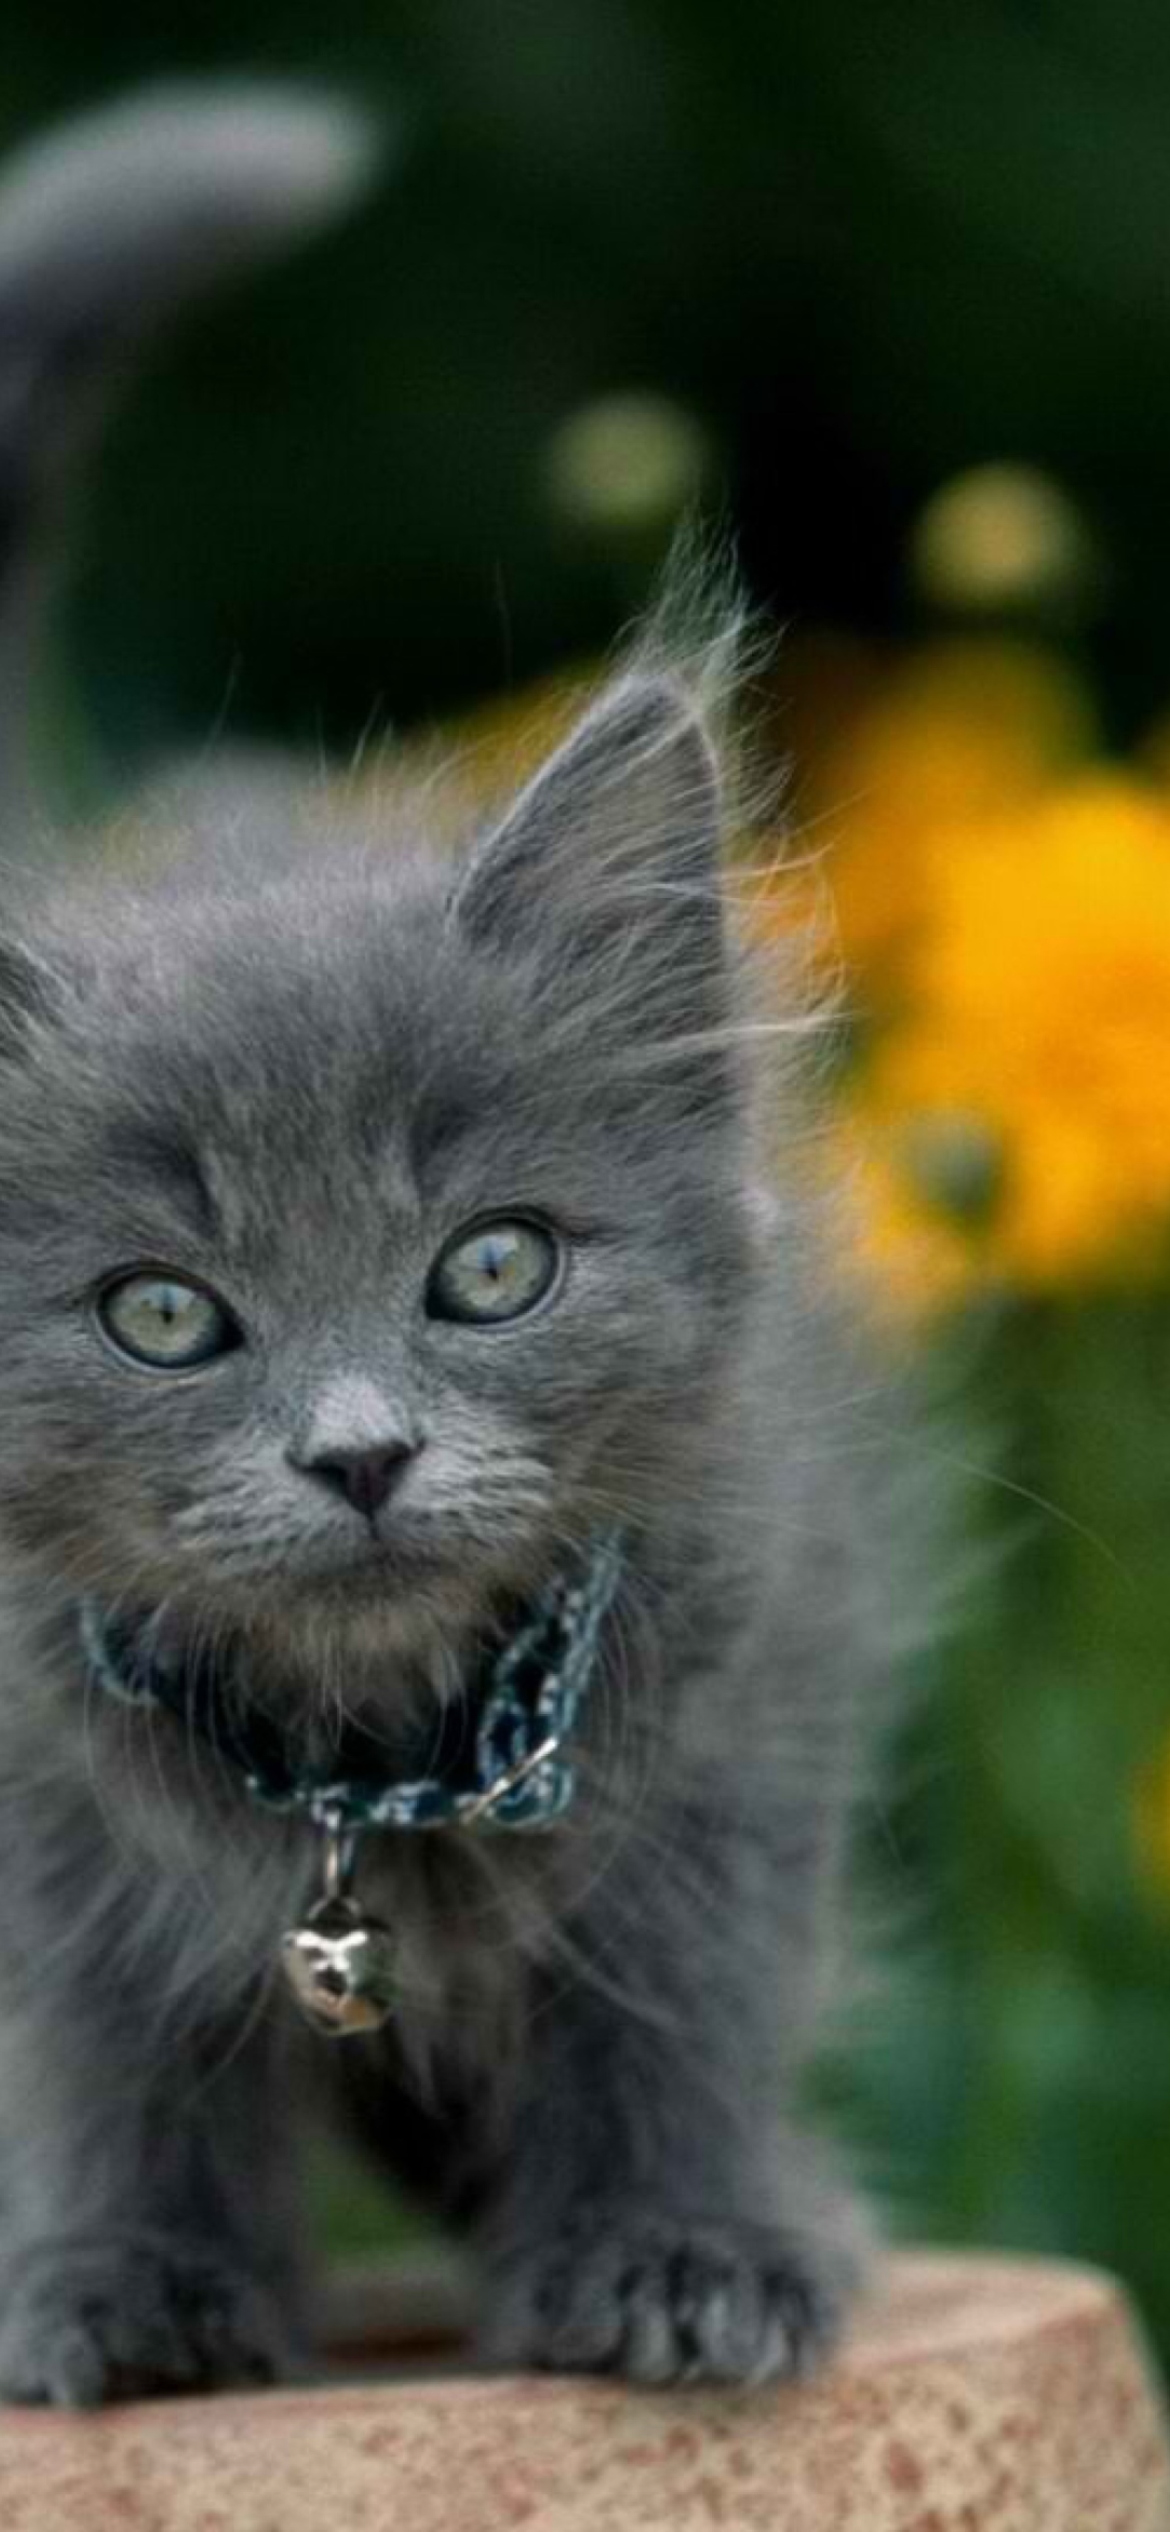 Little Blue Kitten With Necklace screenshot #1 1170x2532